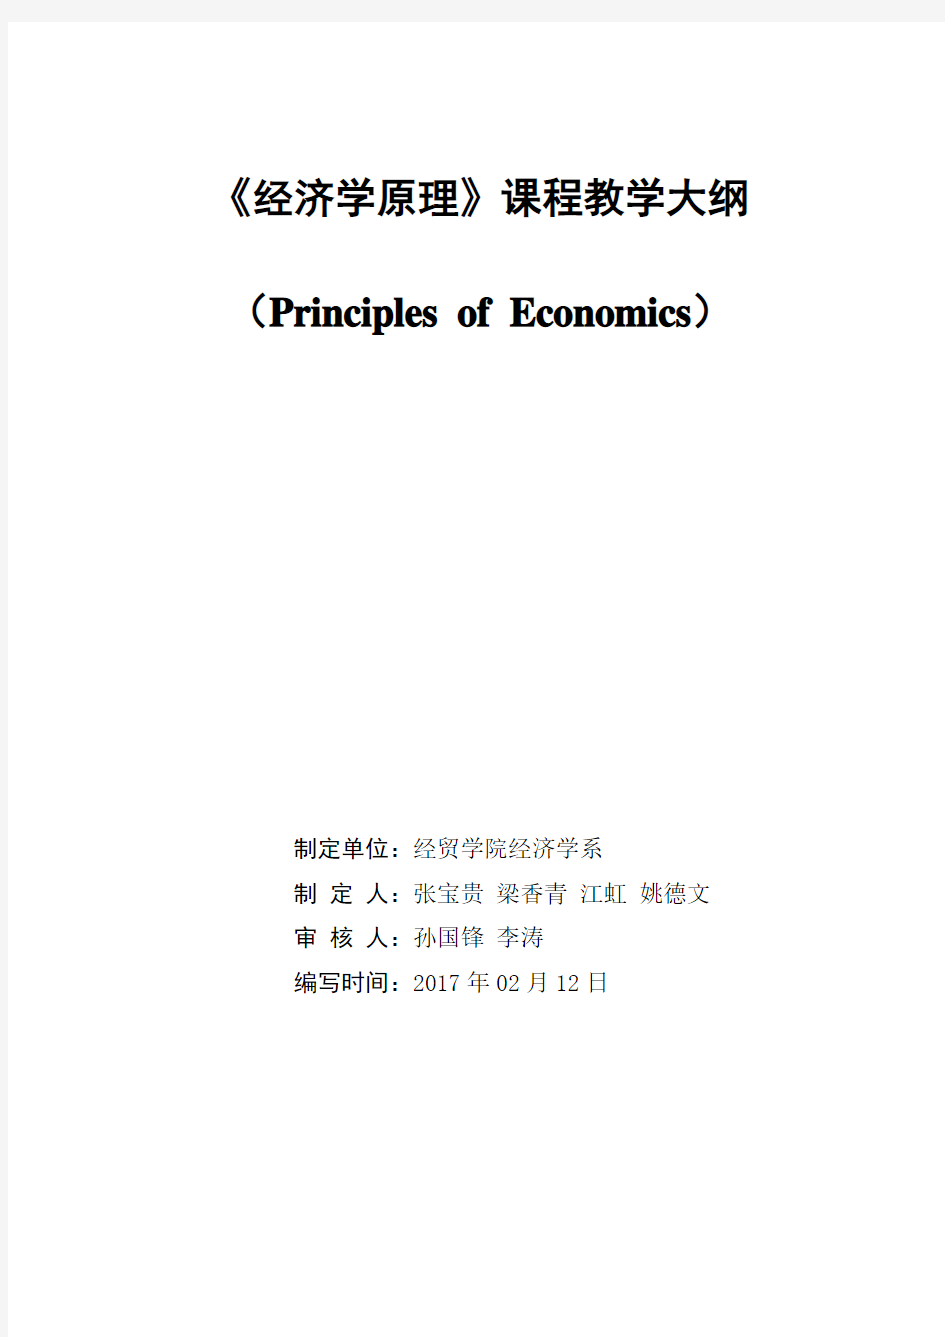 《经济学原理》教学大纲2017修订版 NEW